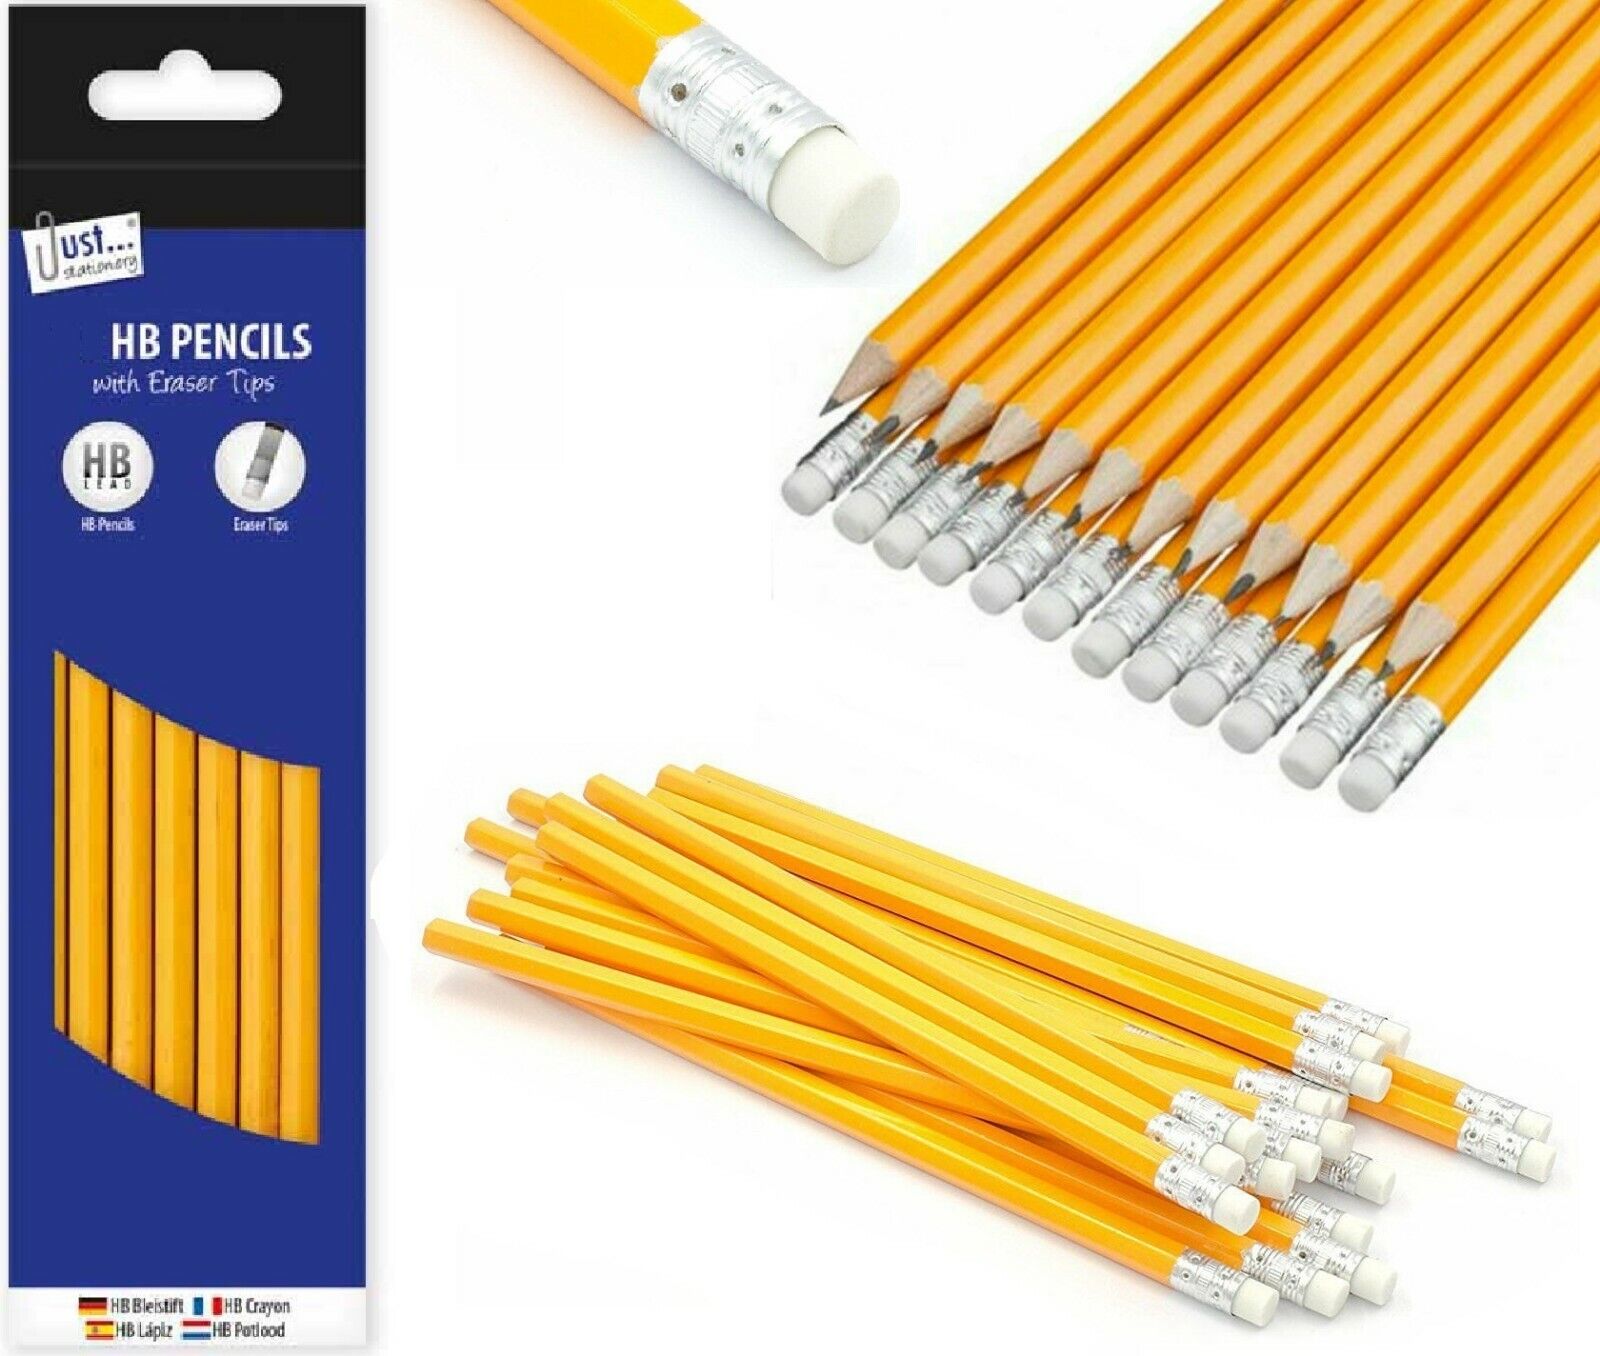 Beclen Harp 15-150 HB Pencils With Eraser Top Office School Craft Art Drawing Break-Resistant Creative Lead Pencils